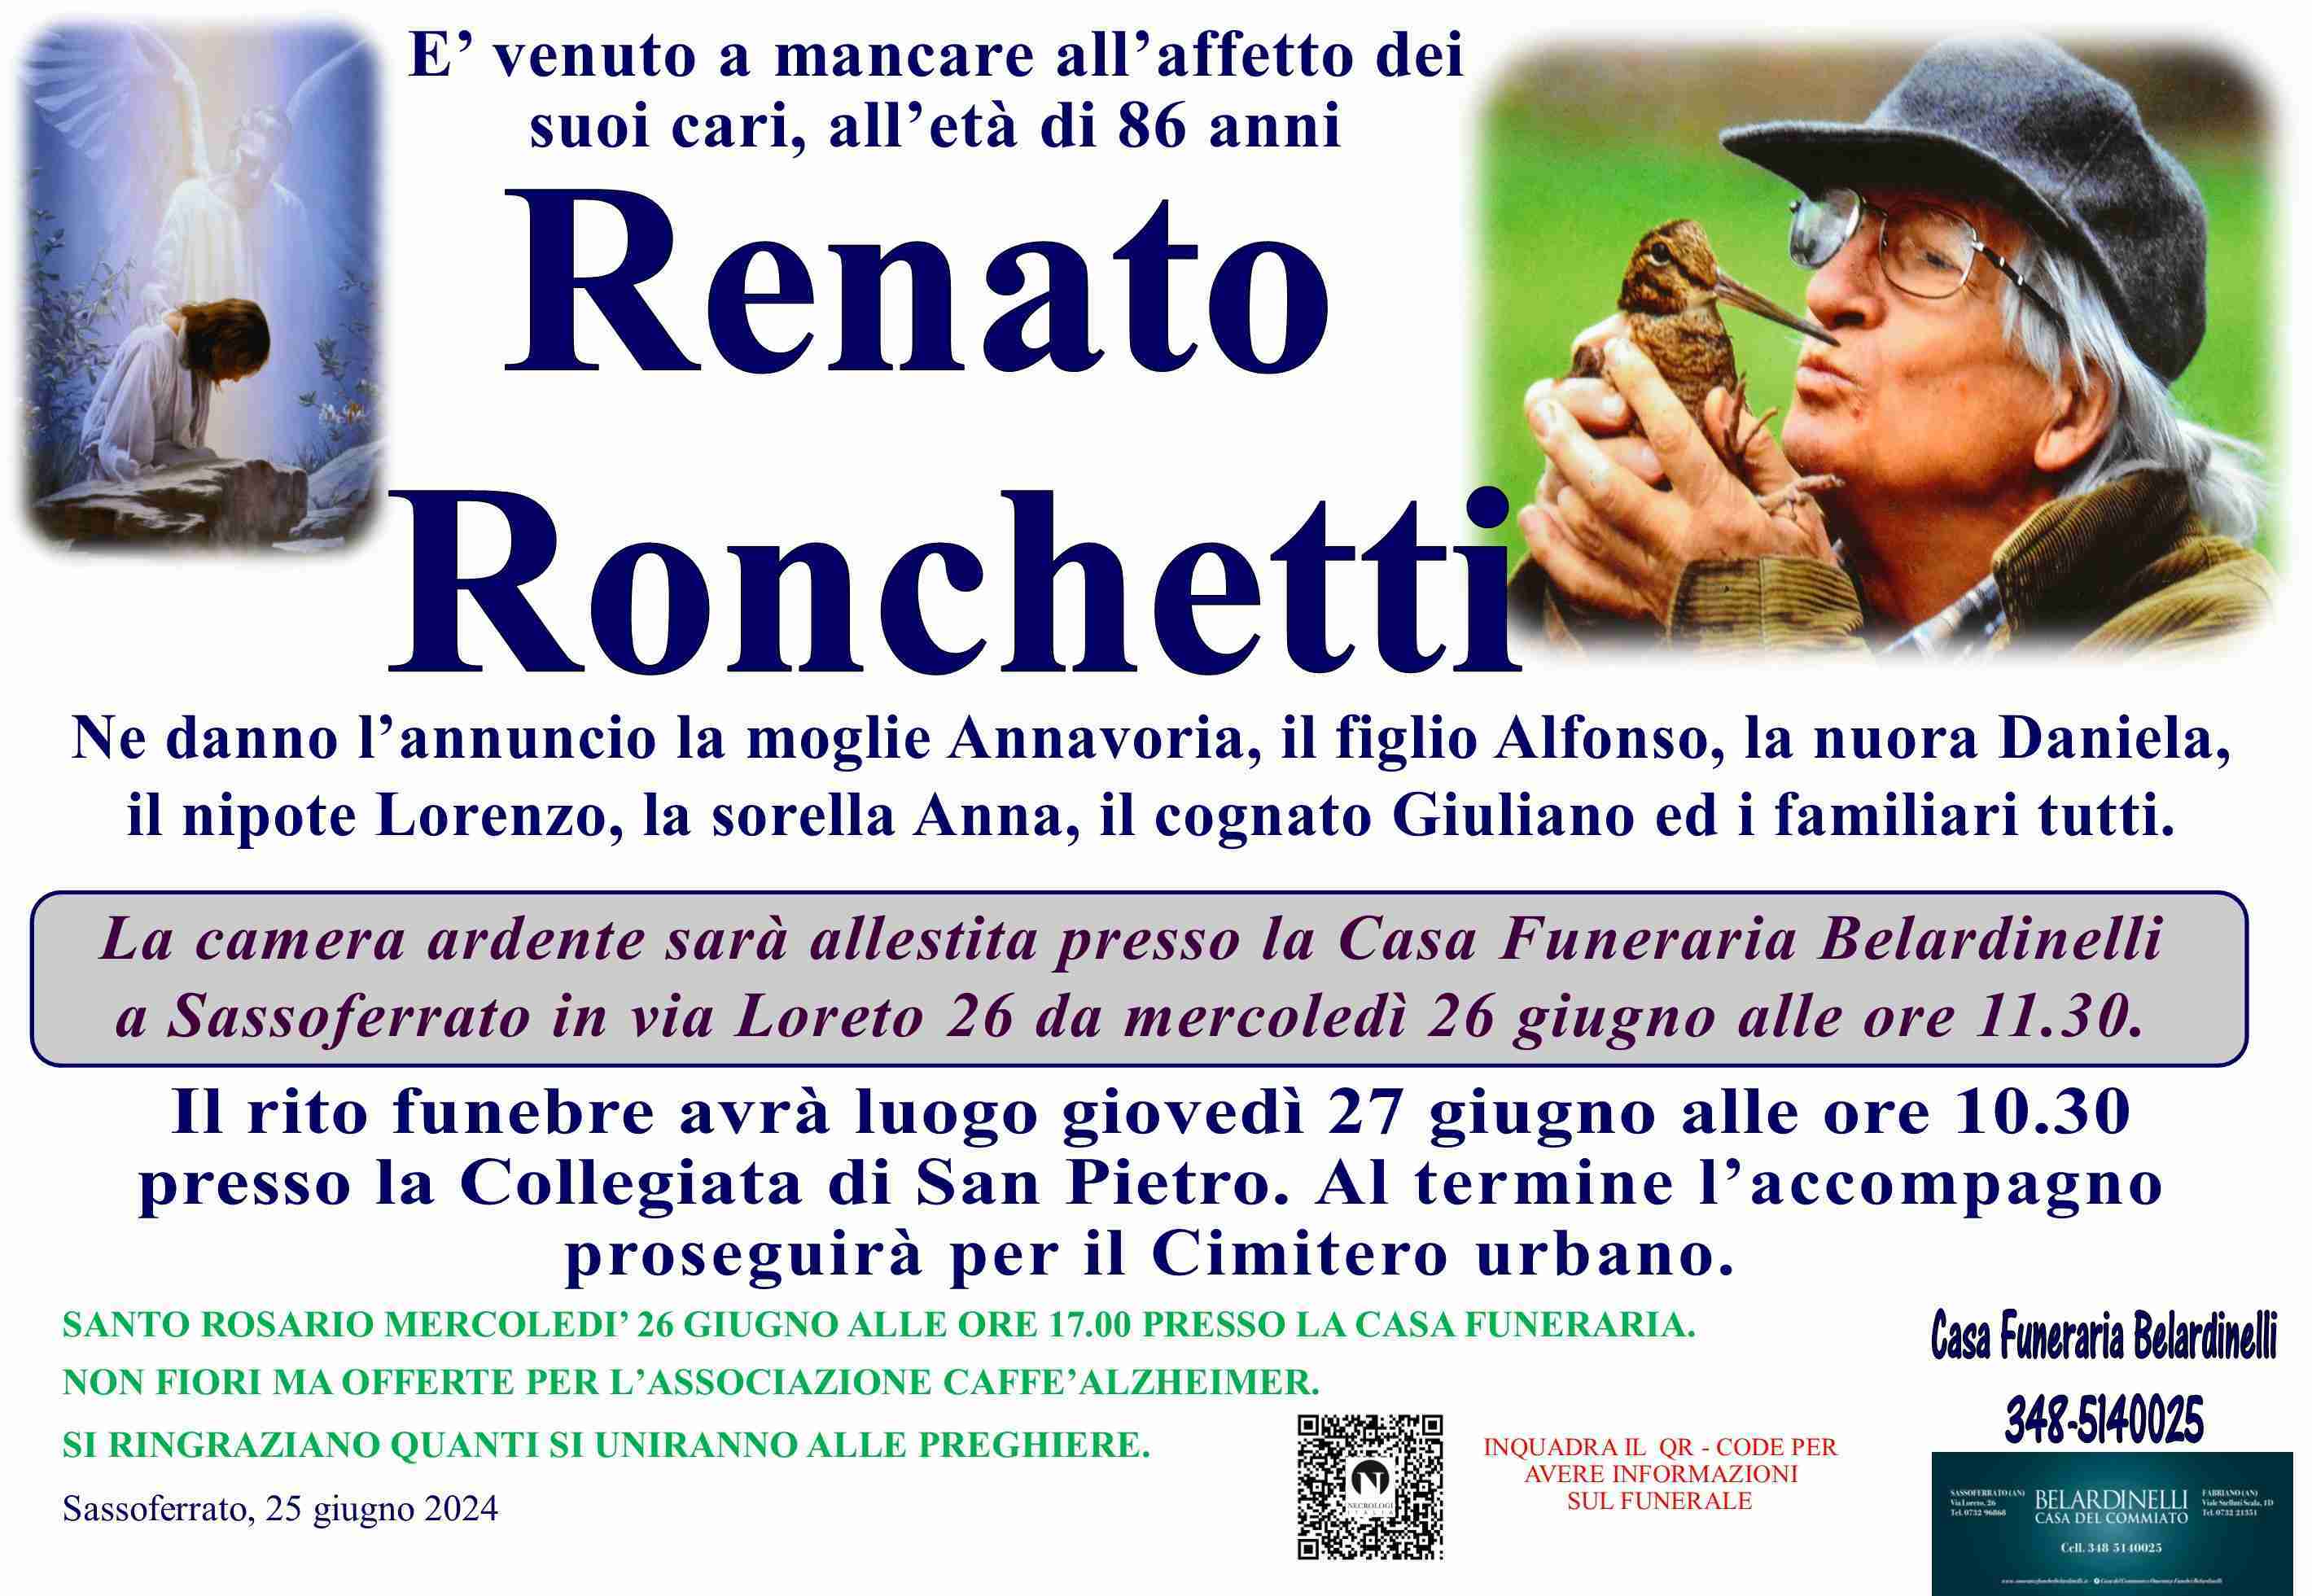 Renato Ronchetti